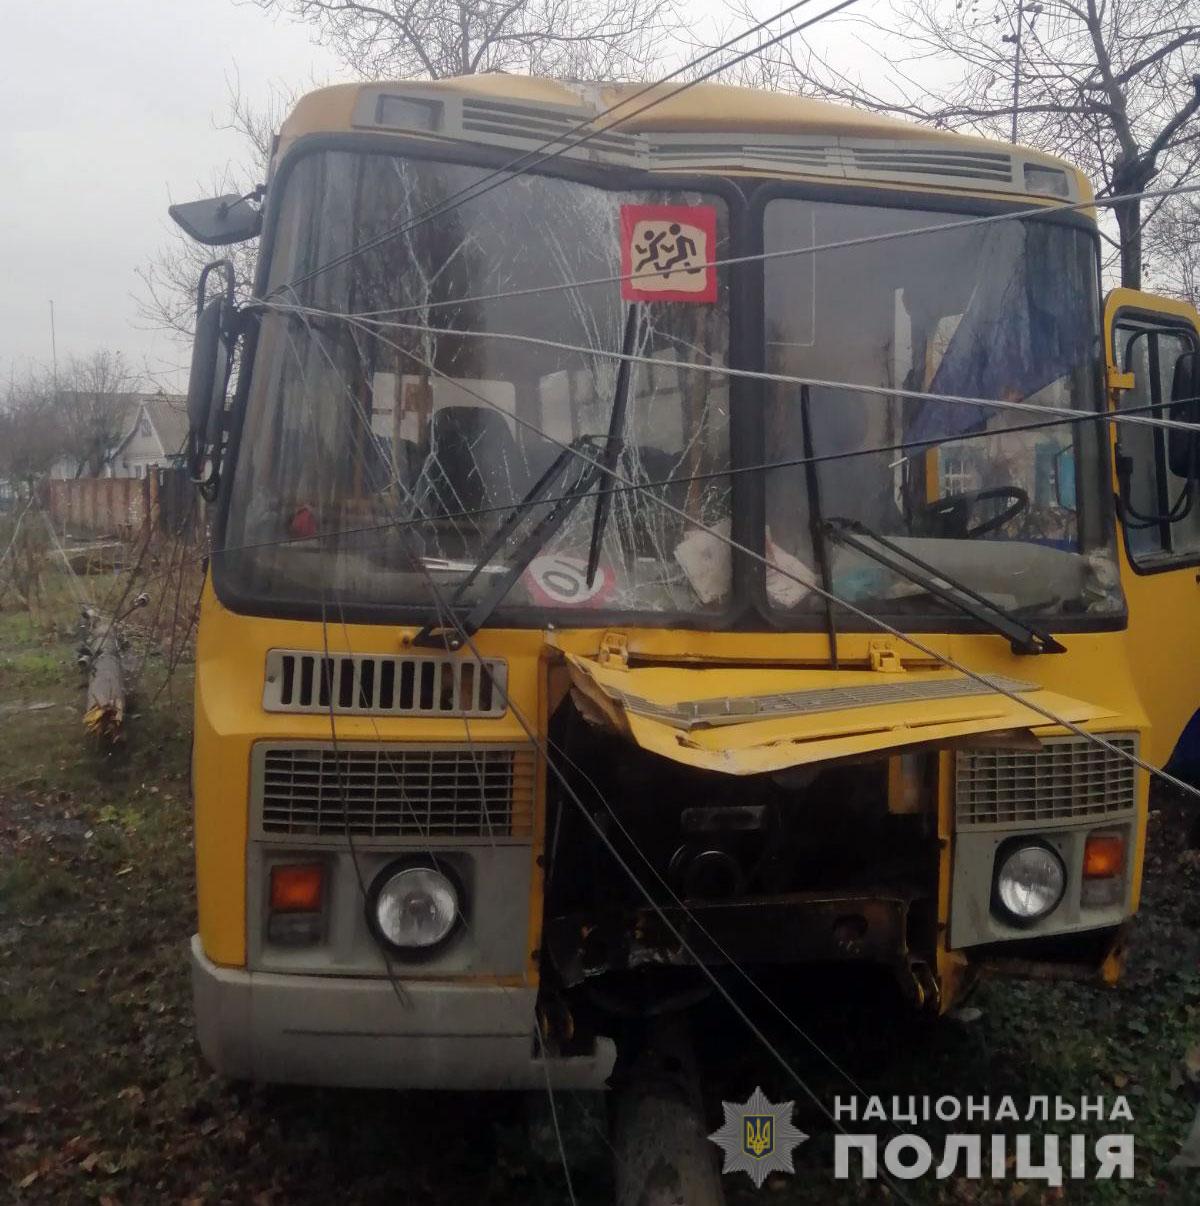  ДТП с участием школьного автобуса в Полтавской области 